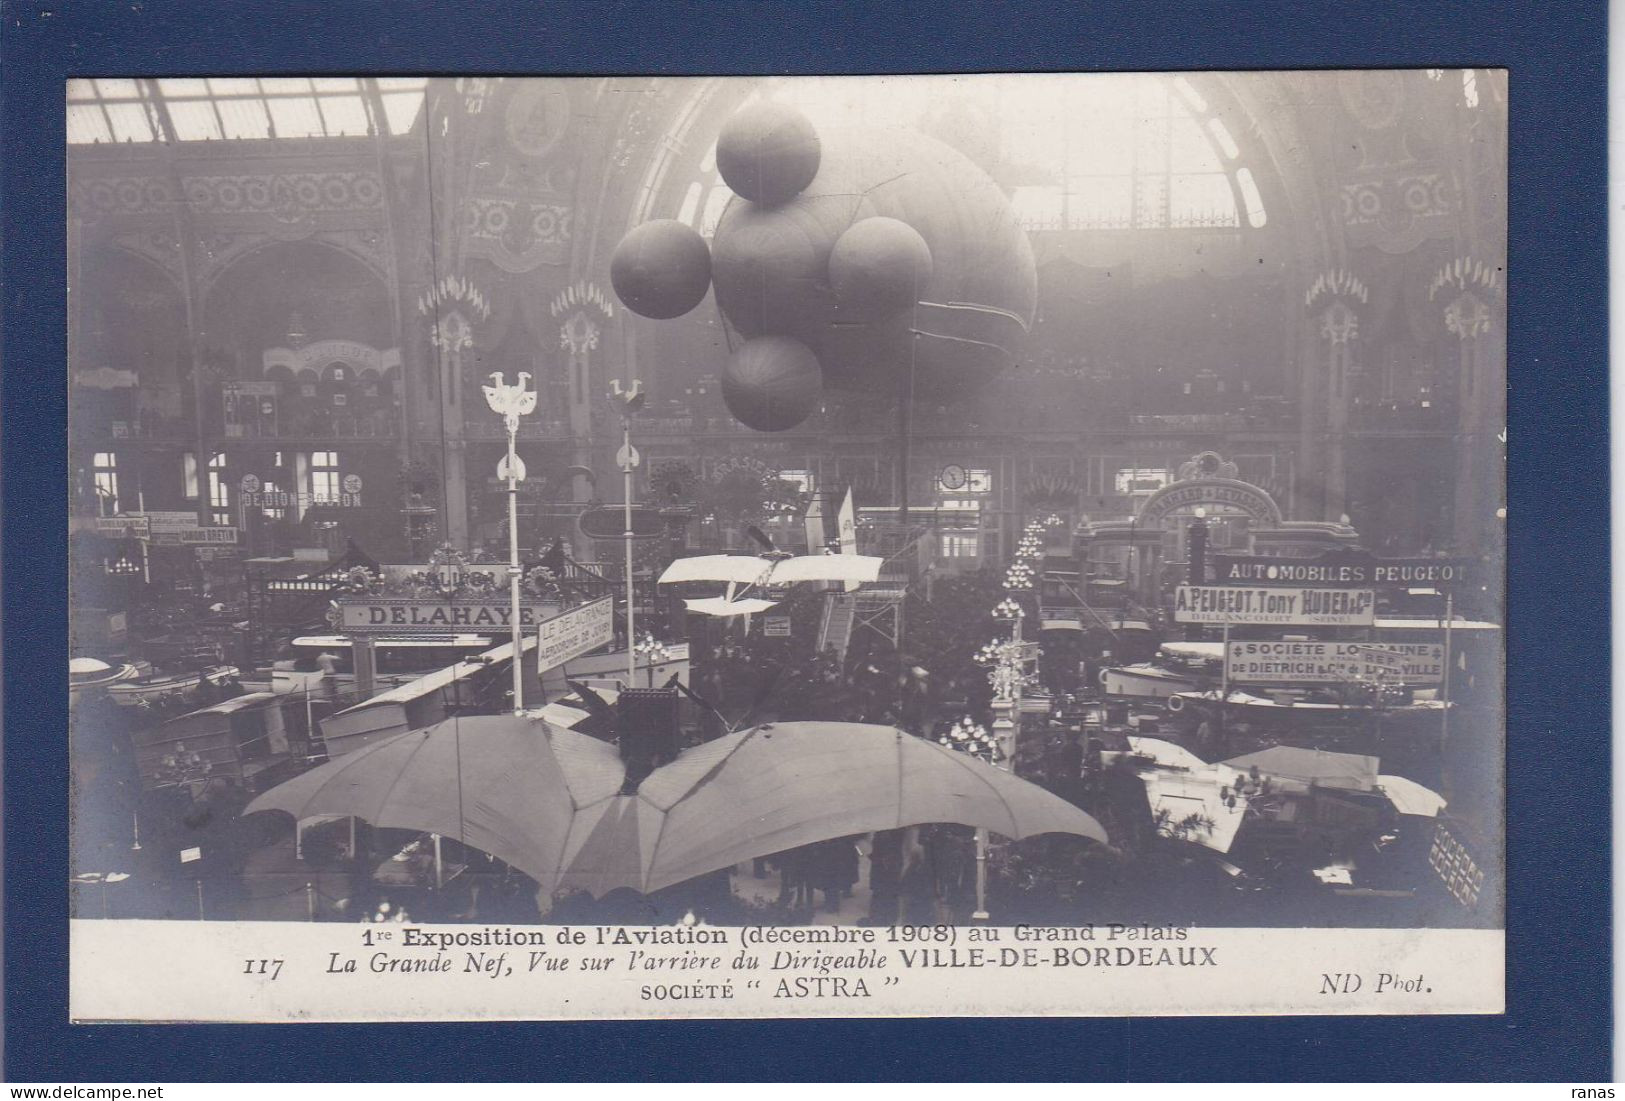 CPA Aviation Montgolfière Ballon Rond Non Circulée Paris Exposition - Globos